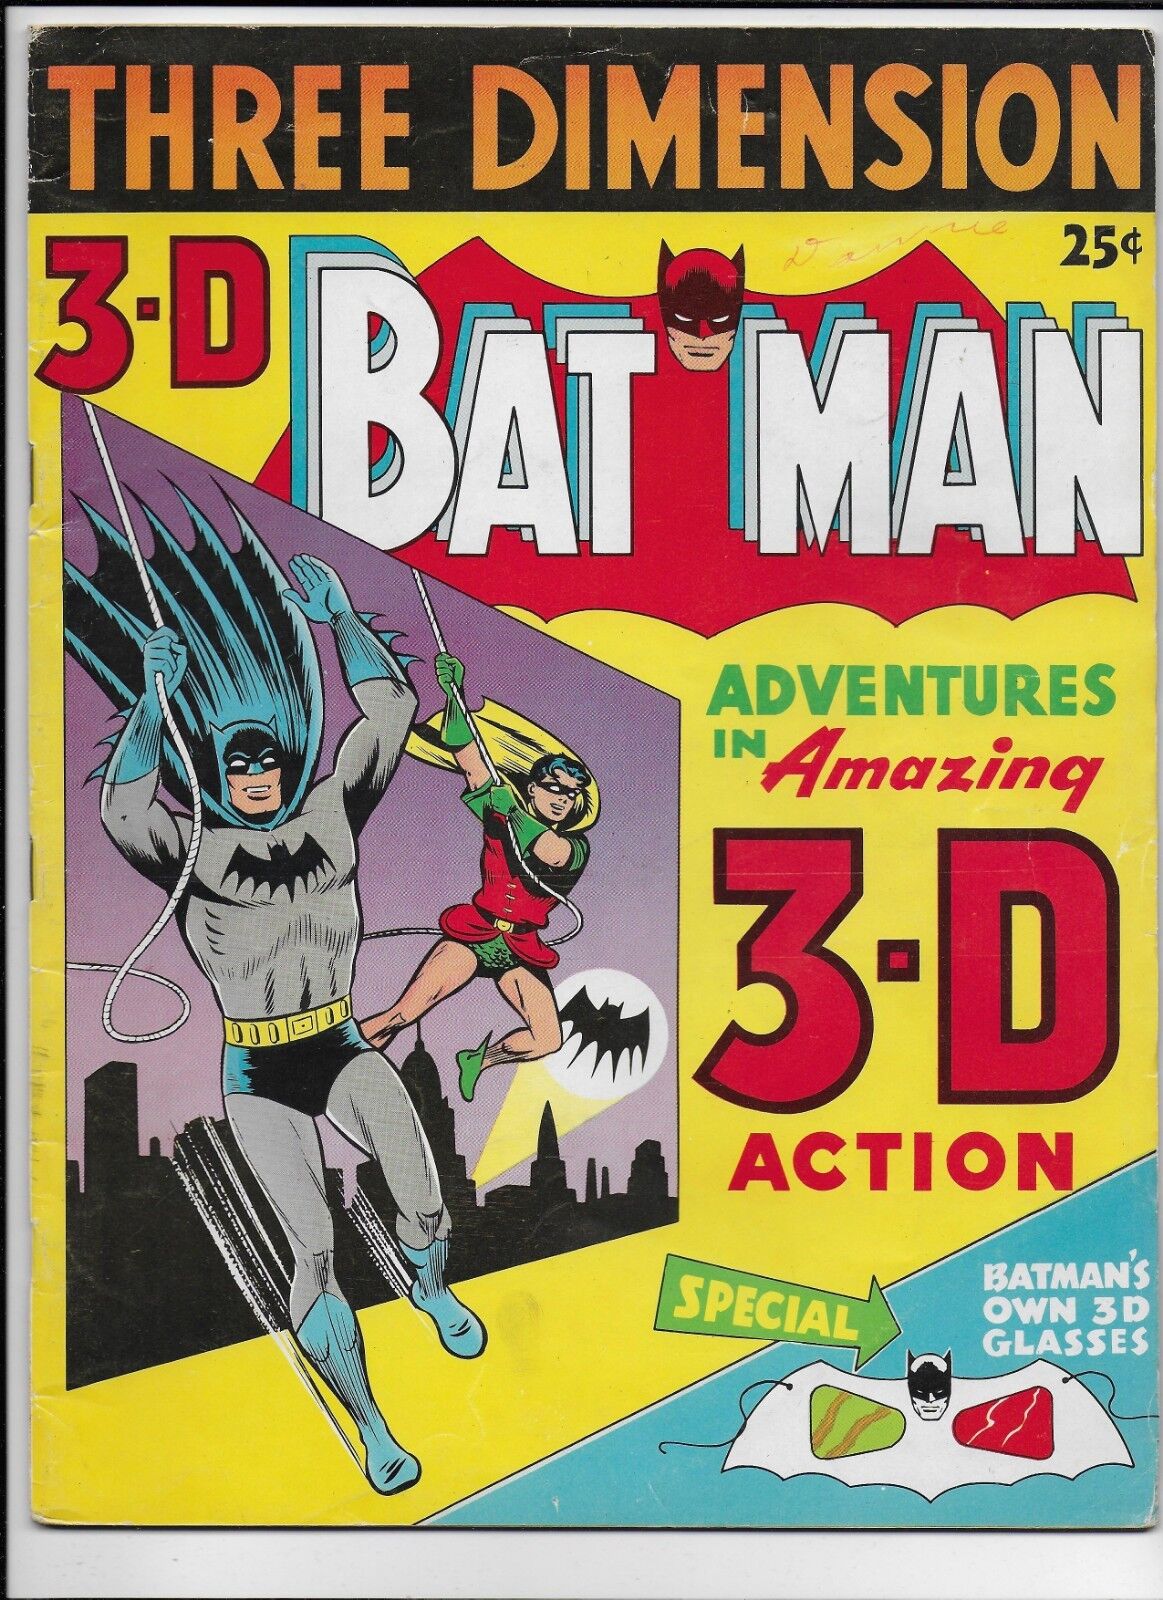 3-D BATMAN - REPRINTS BATMAN 42 & BATMAN 48 - PENGUIN - NO GLASSES (1953)